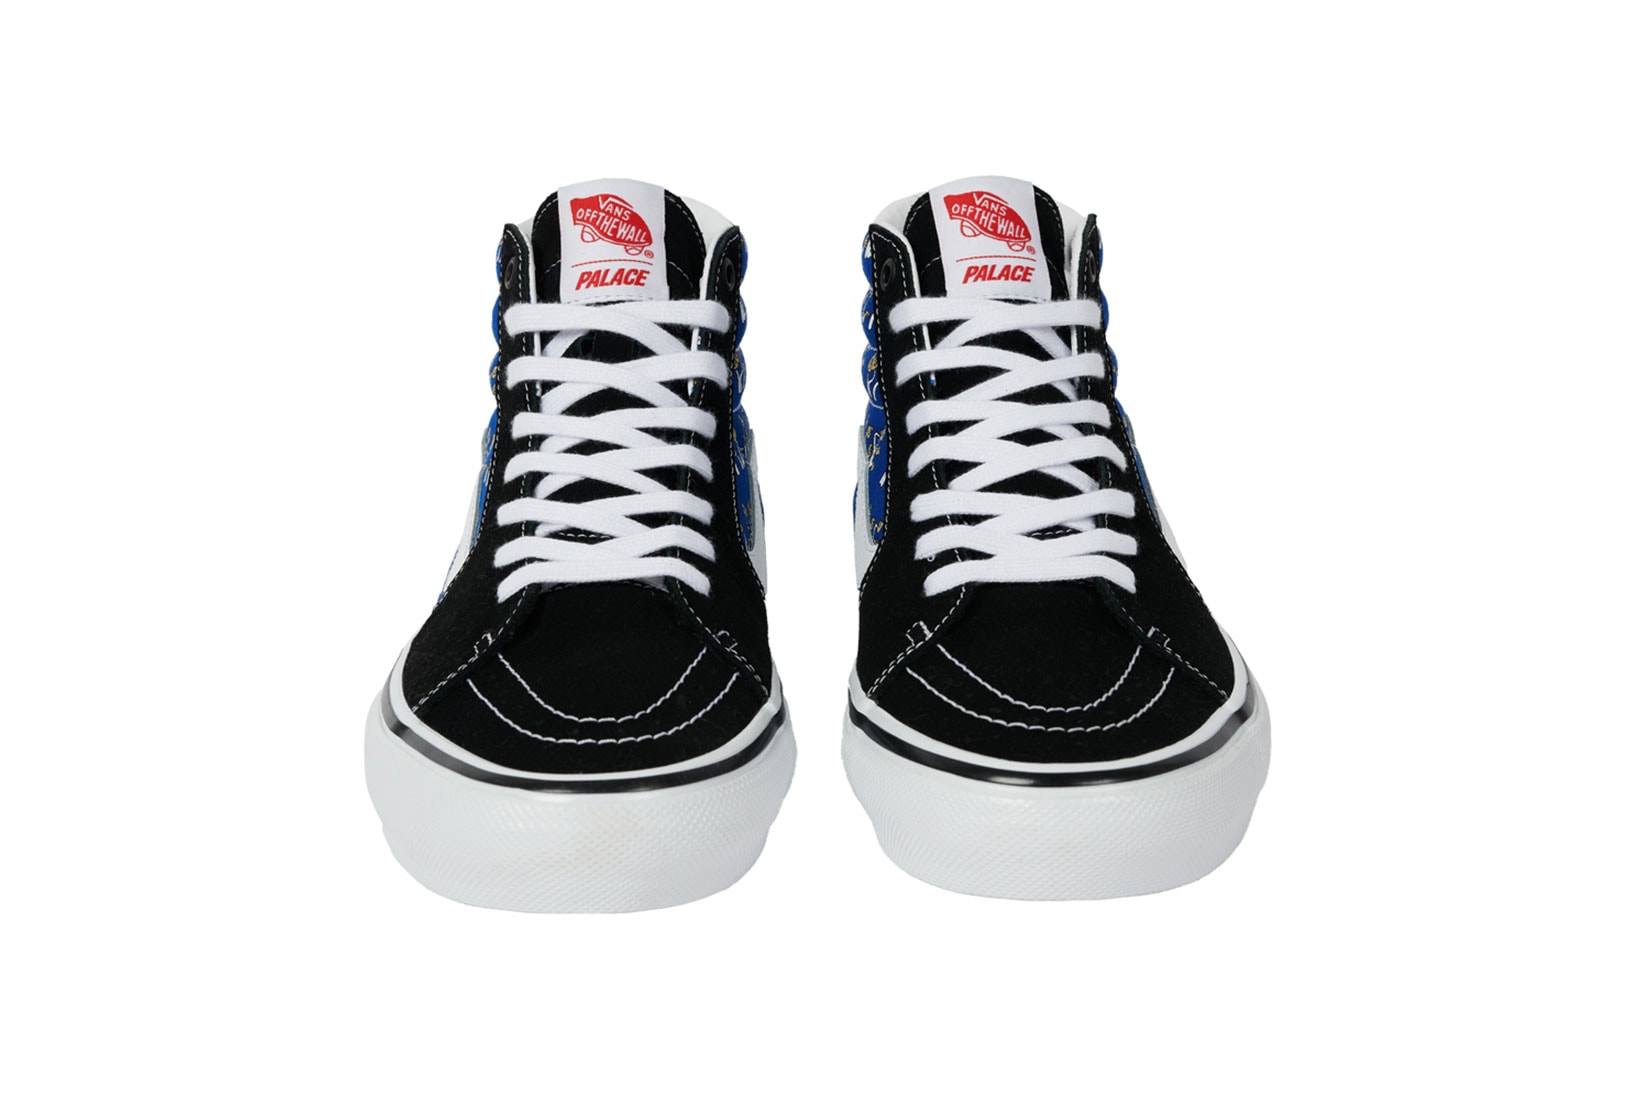 Palace Vans Sk8-Hi Shroom Collection Sneakers Blue Black Front Details